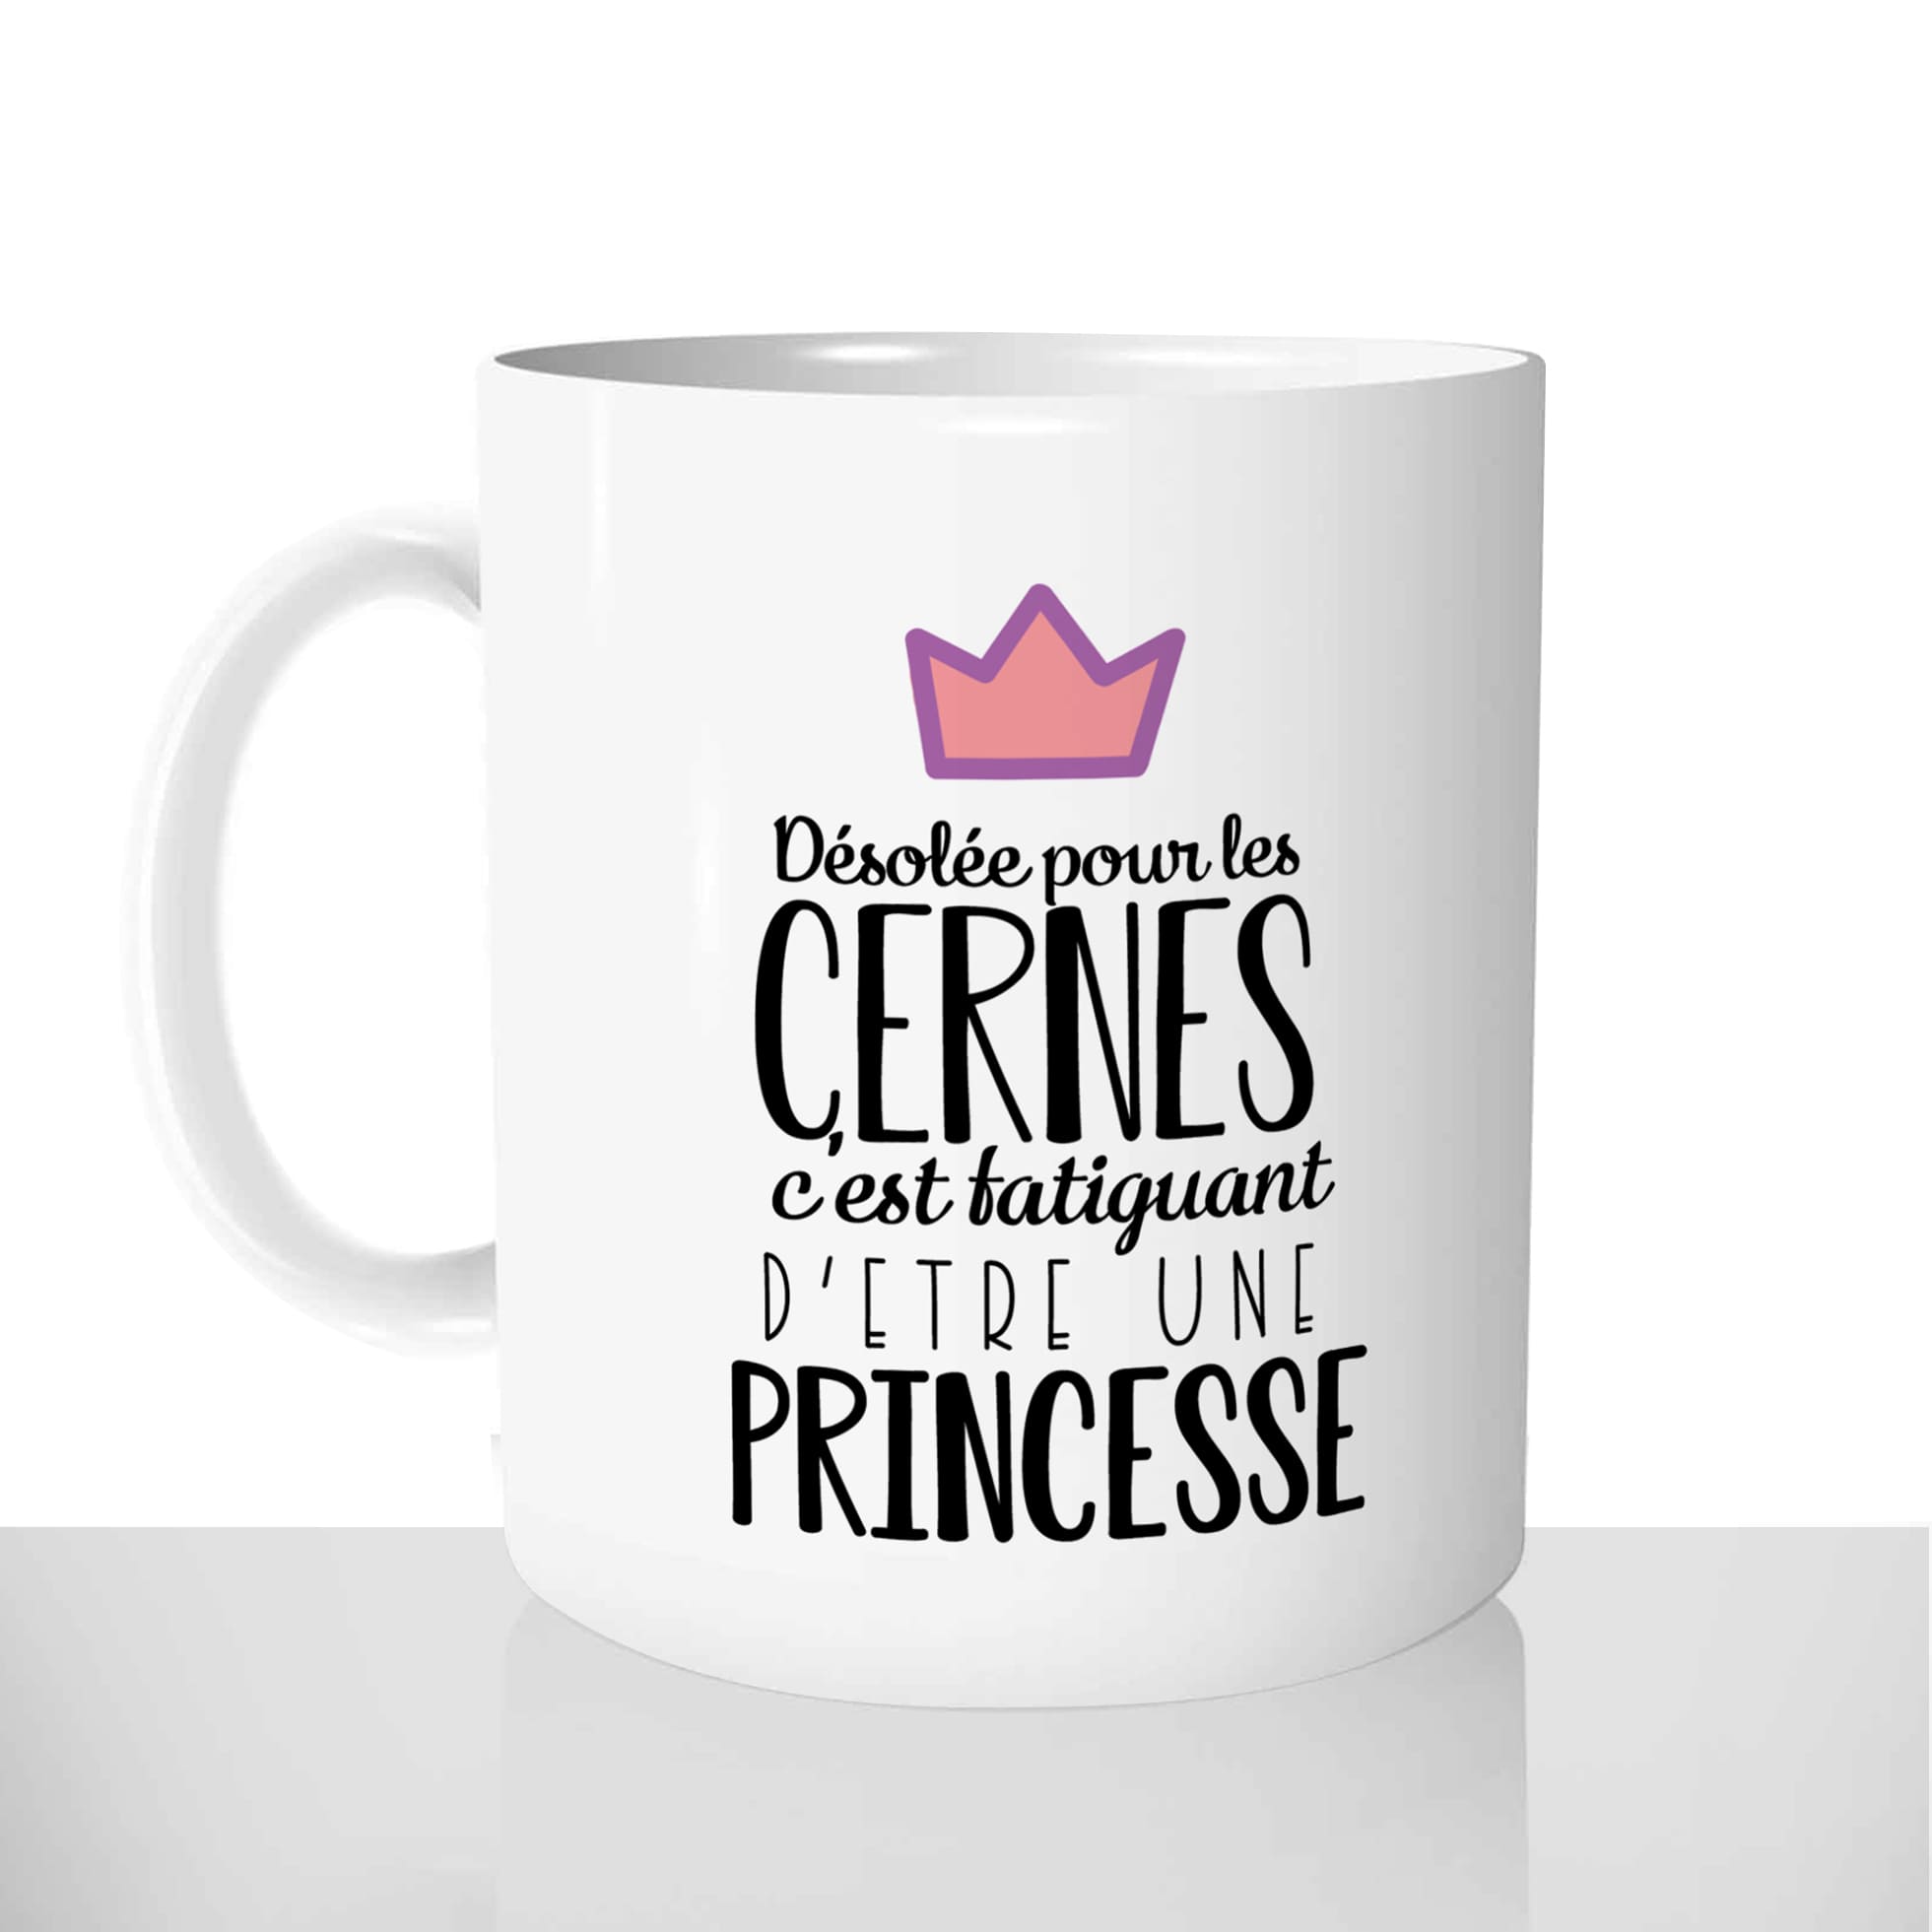 mug classique en céramique 11oz personnalisé personnalisable photo citation désolée pour les cernes fatiguant princesse femme offrir cadeau